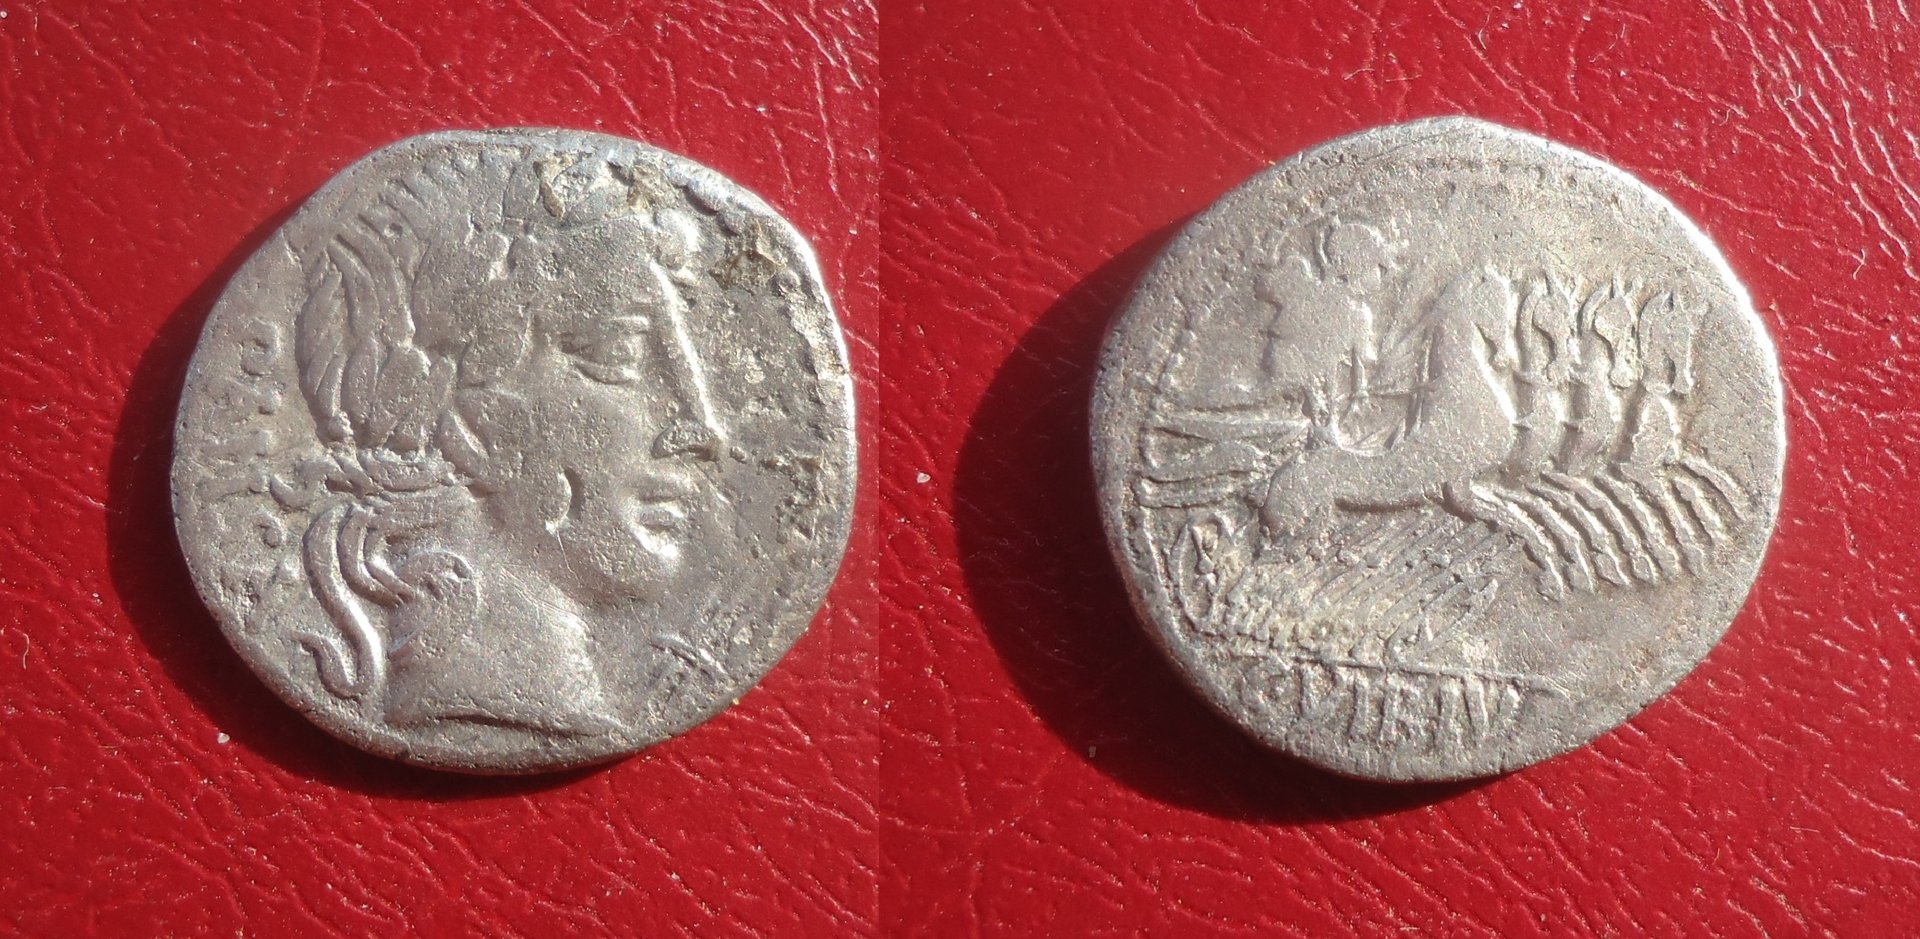 RR - Vibia 1 denarius Oct 2018 (0).jpg